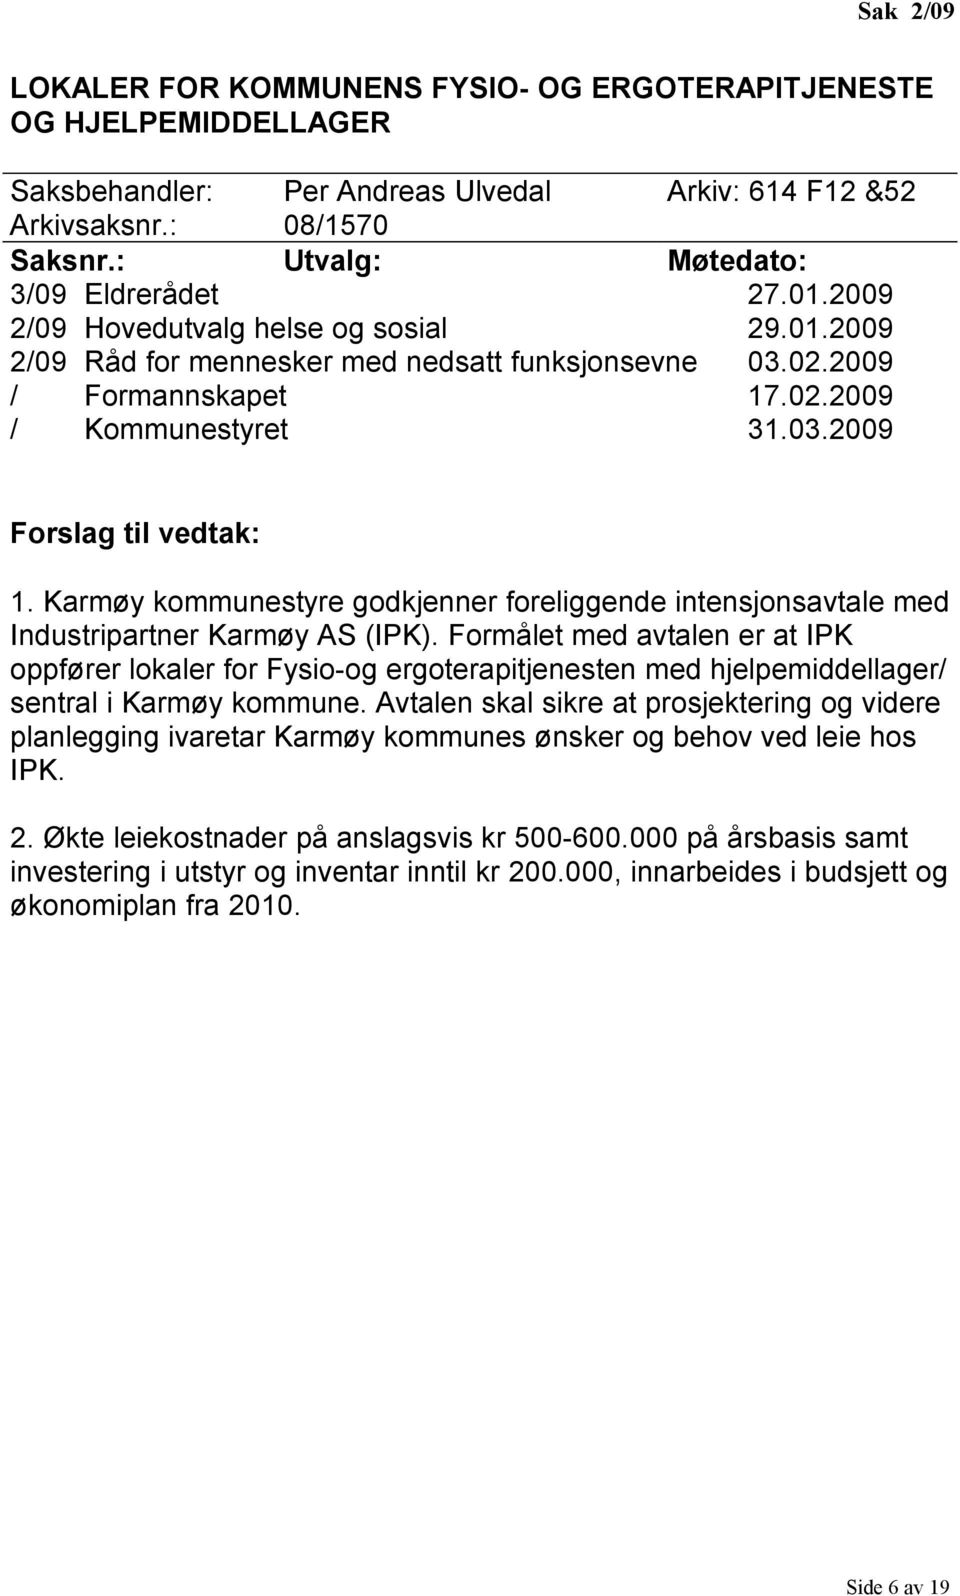 Karmøy kommunestyre godkjenner foreliggende intensjonsavtale med Industripartner Karmøy AS (IPK).